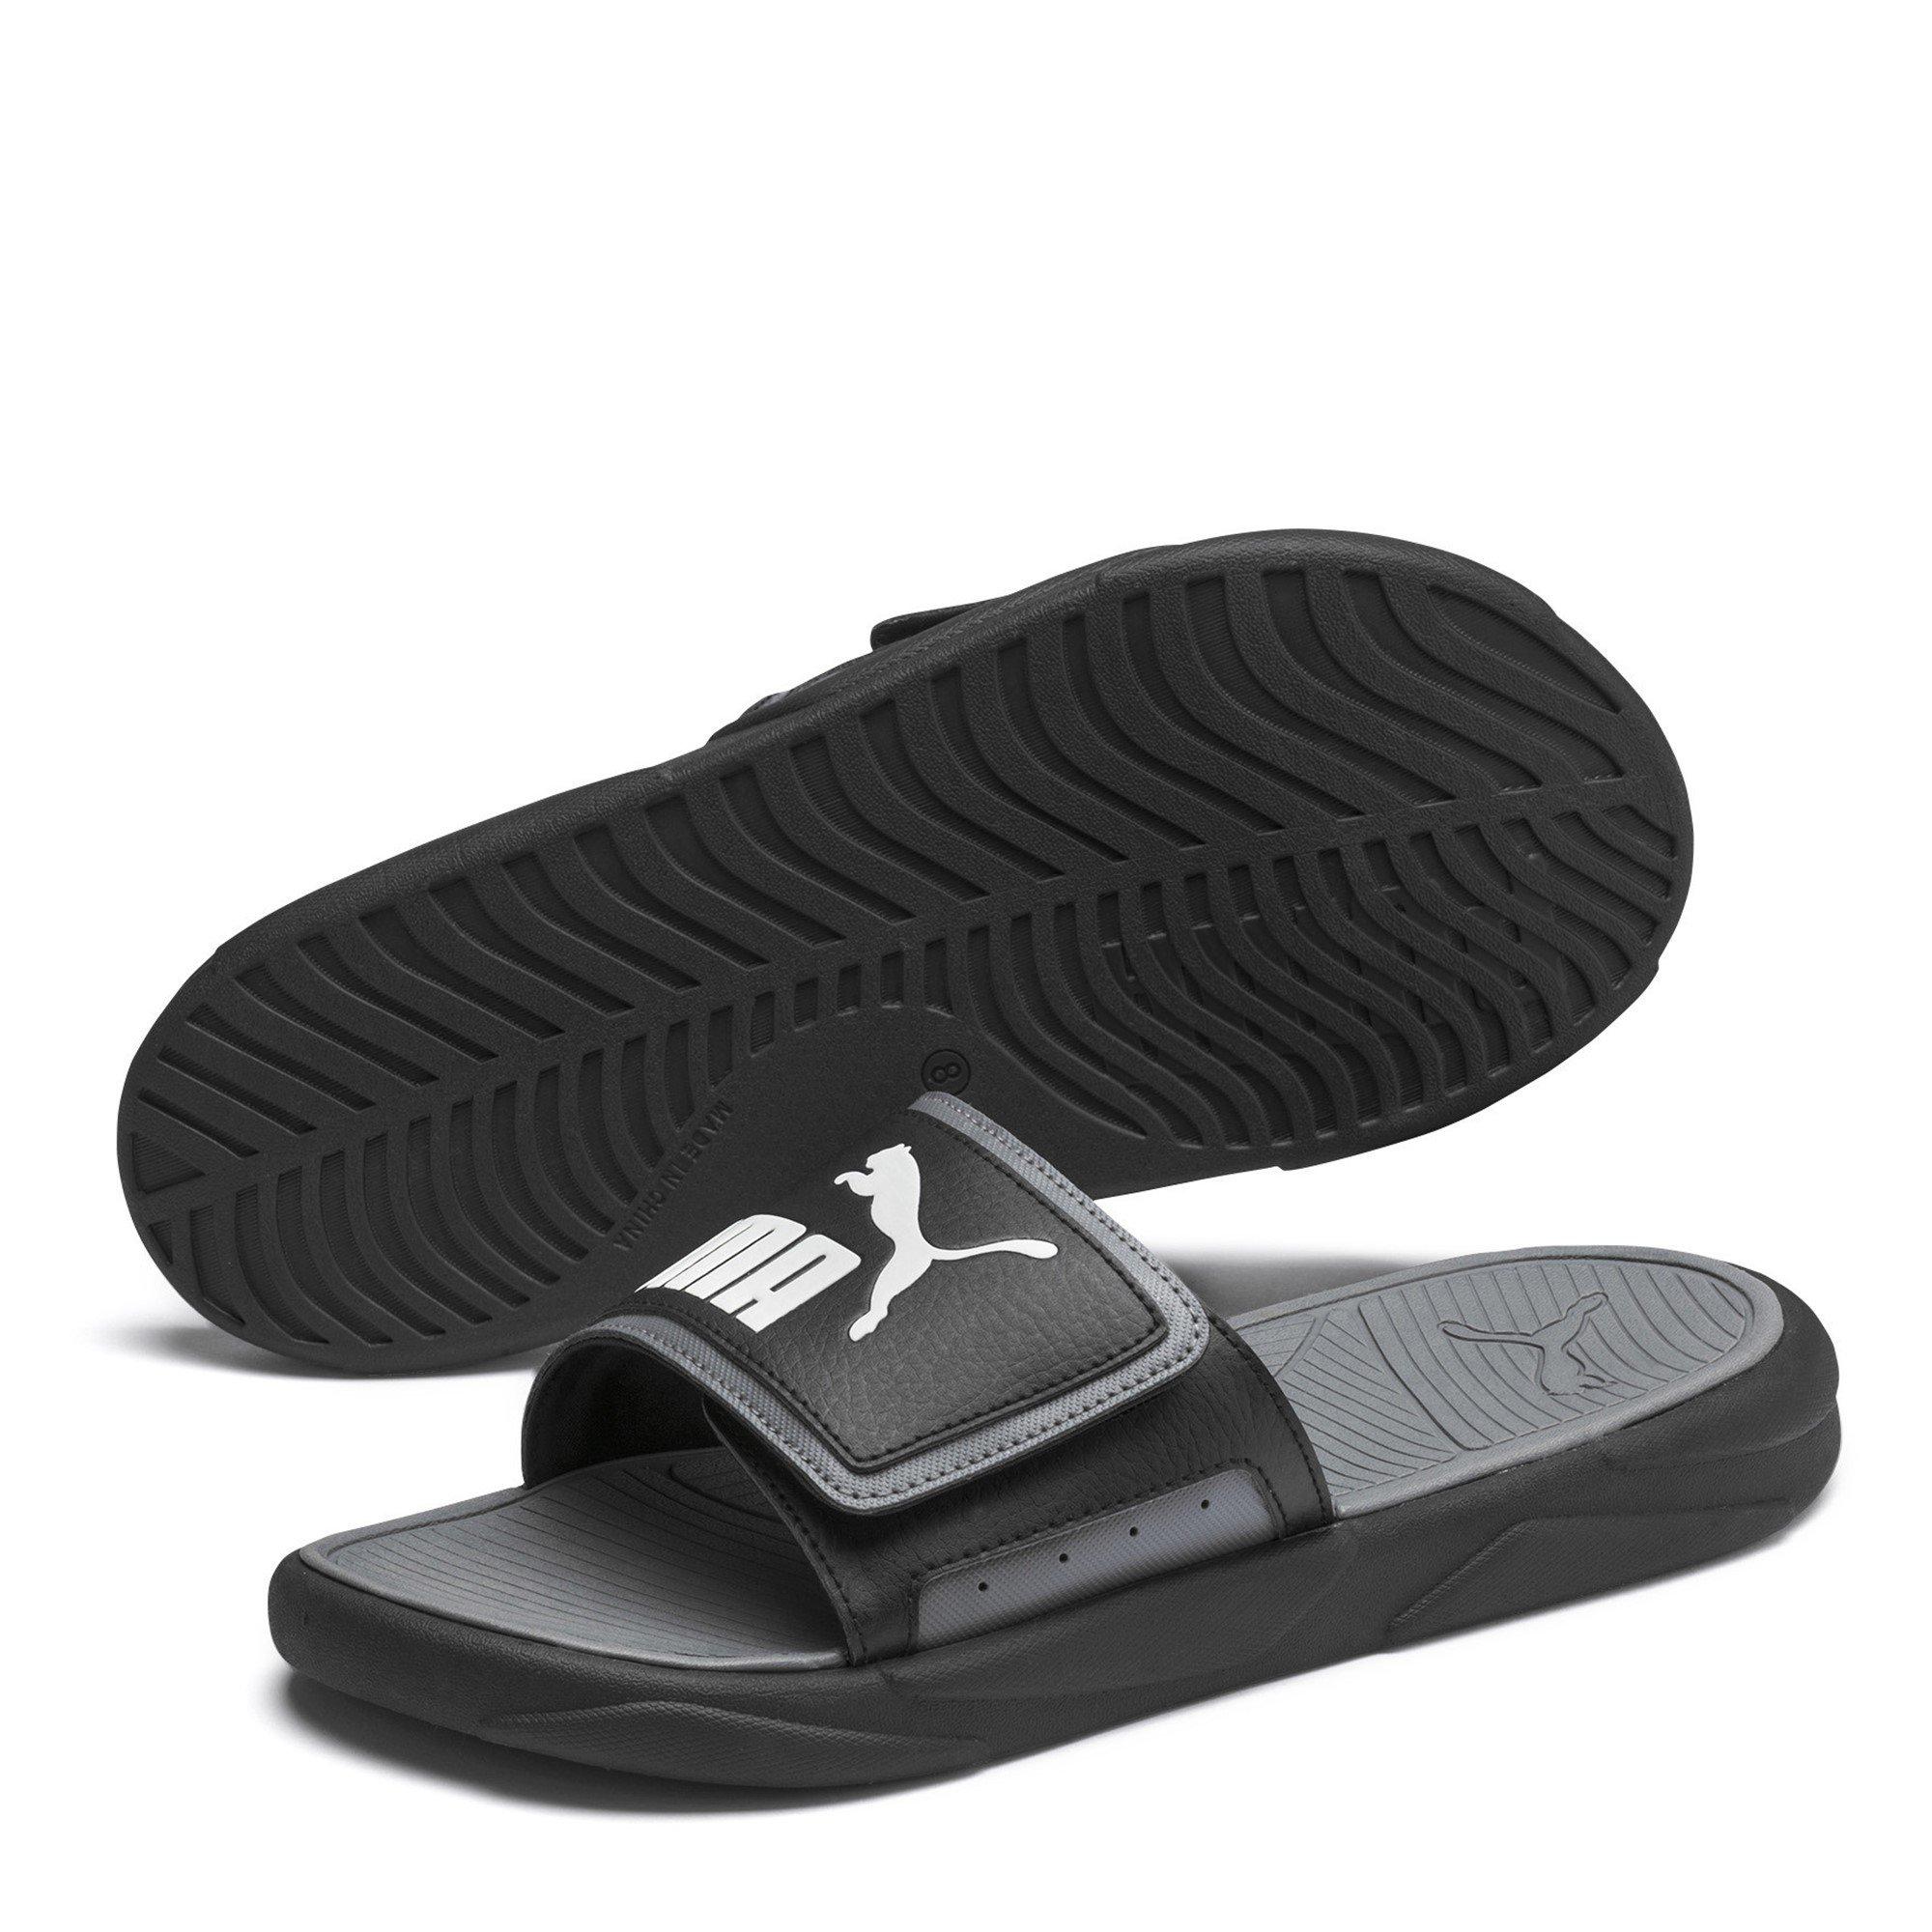 Puma | Royalcat Comfort Unisex Adults Slide Sandals | Pool Shoes ...